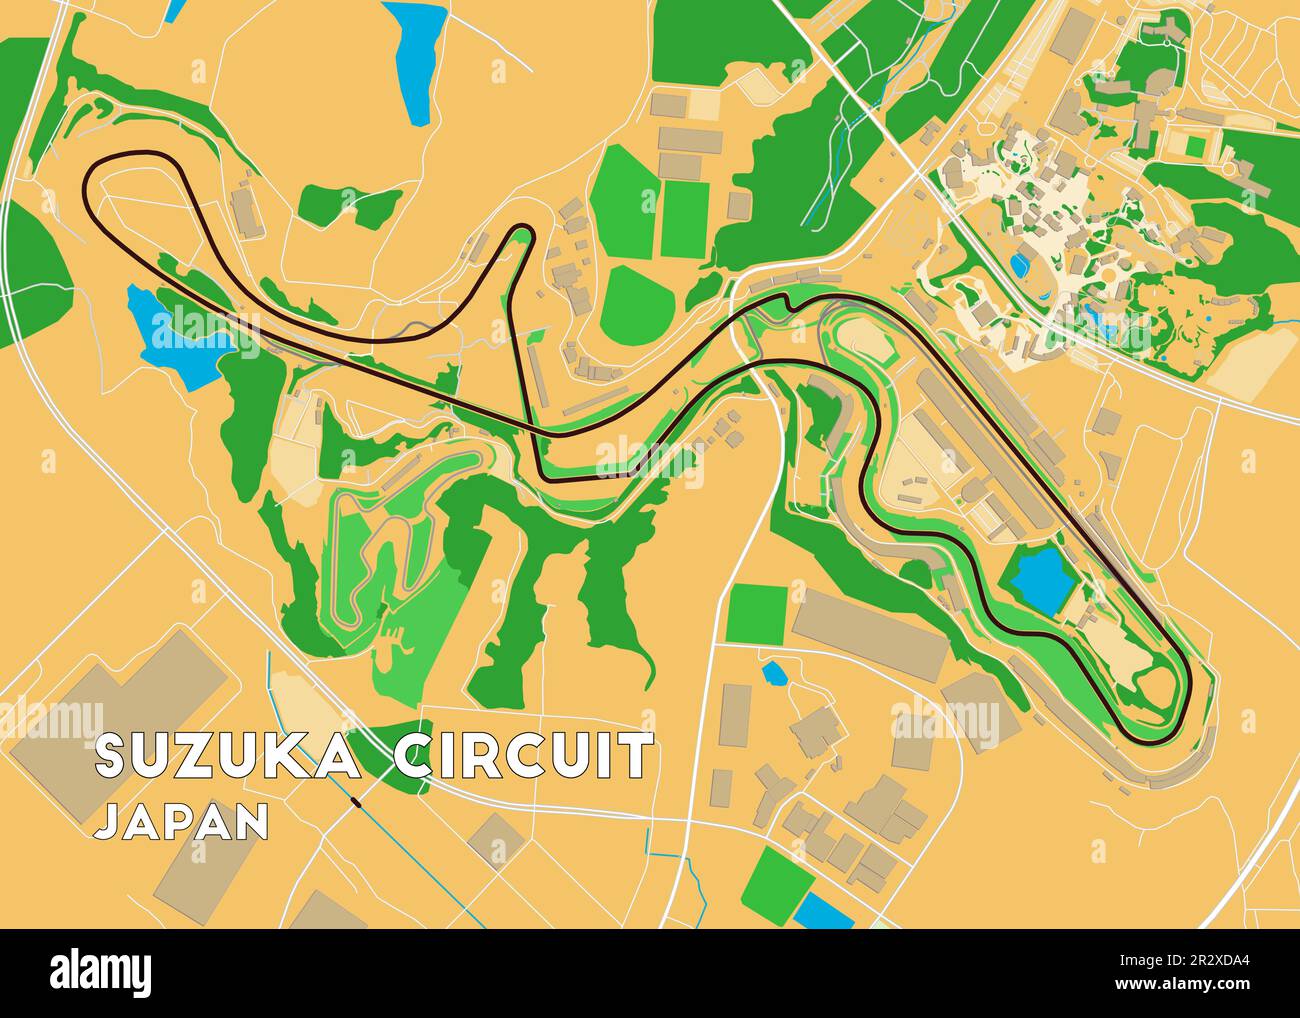 Japan Suzuka Circuit map art Stock Vector